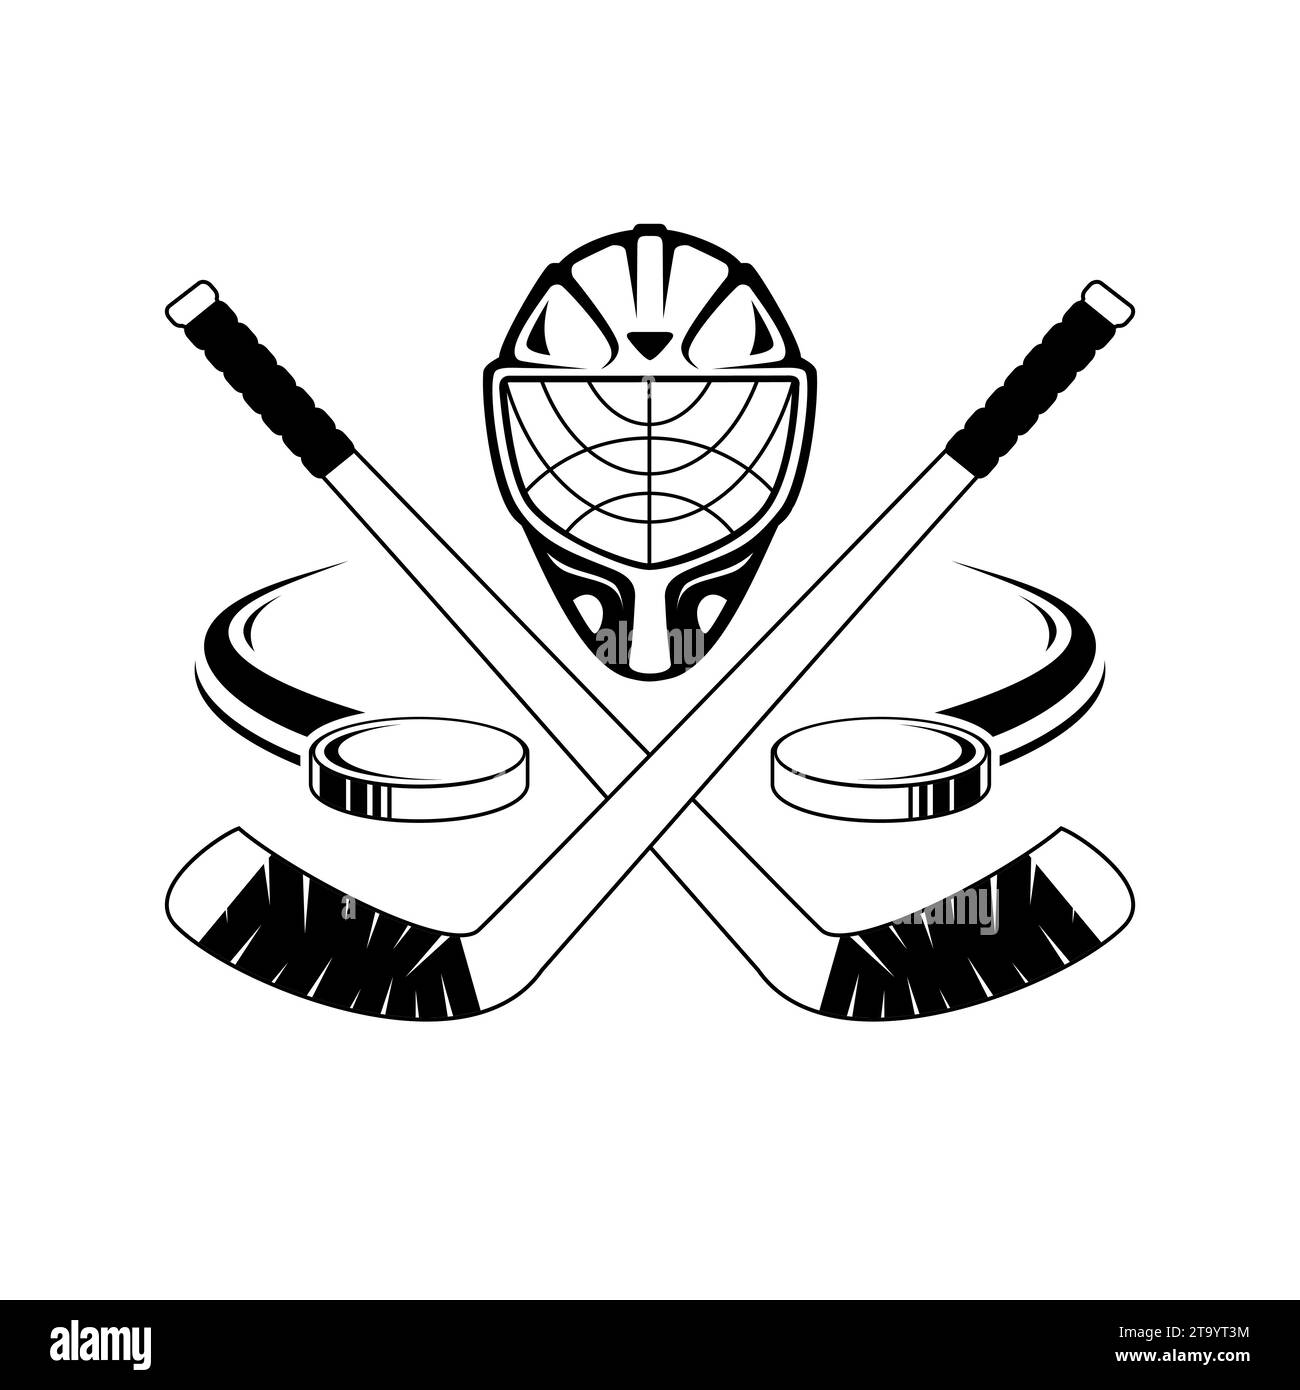 Sihouette von Eishockeyschlägern, Hockeyhelmen, fliegendem Hockeypuck Stock Vektor